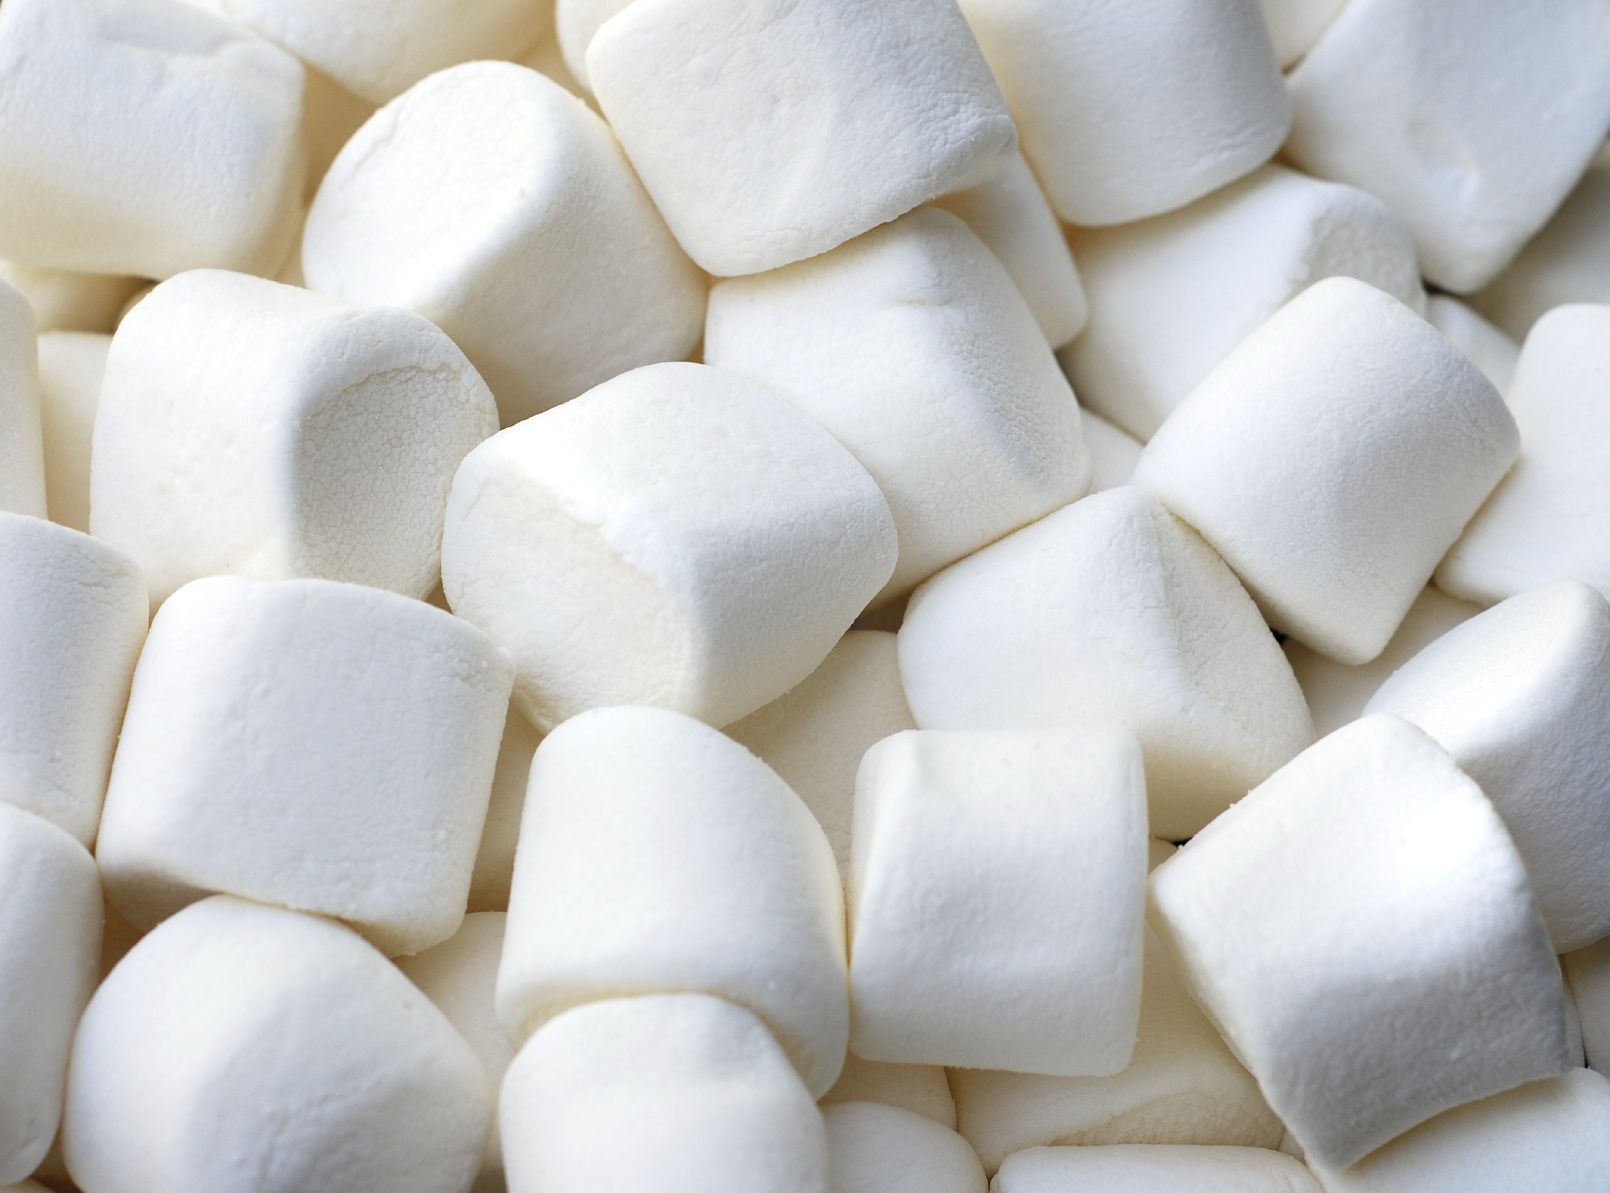 Quit running on marshmallows!